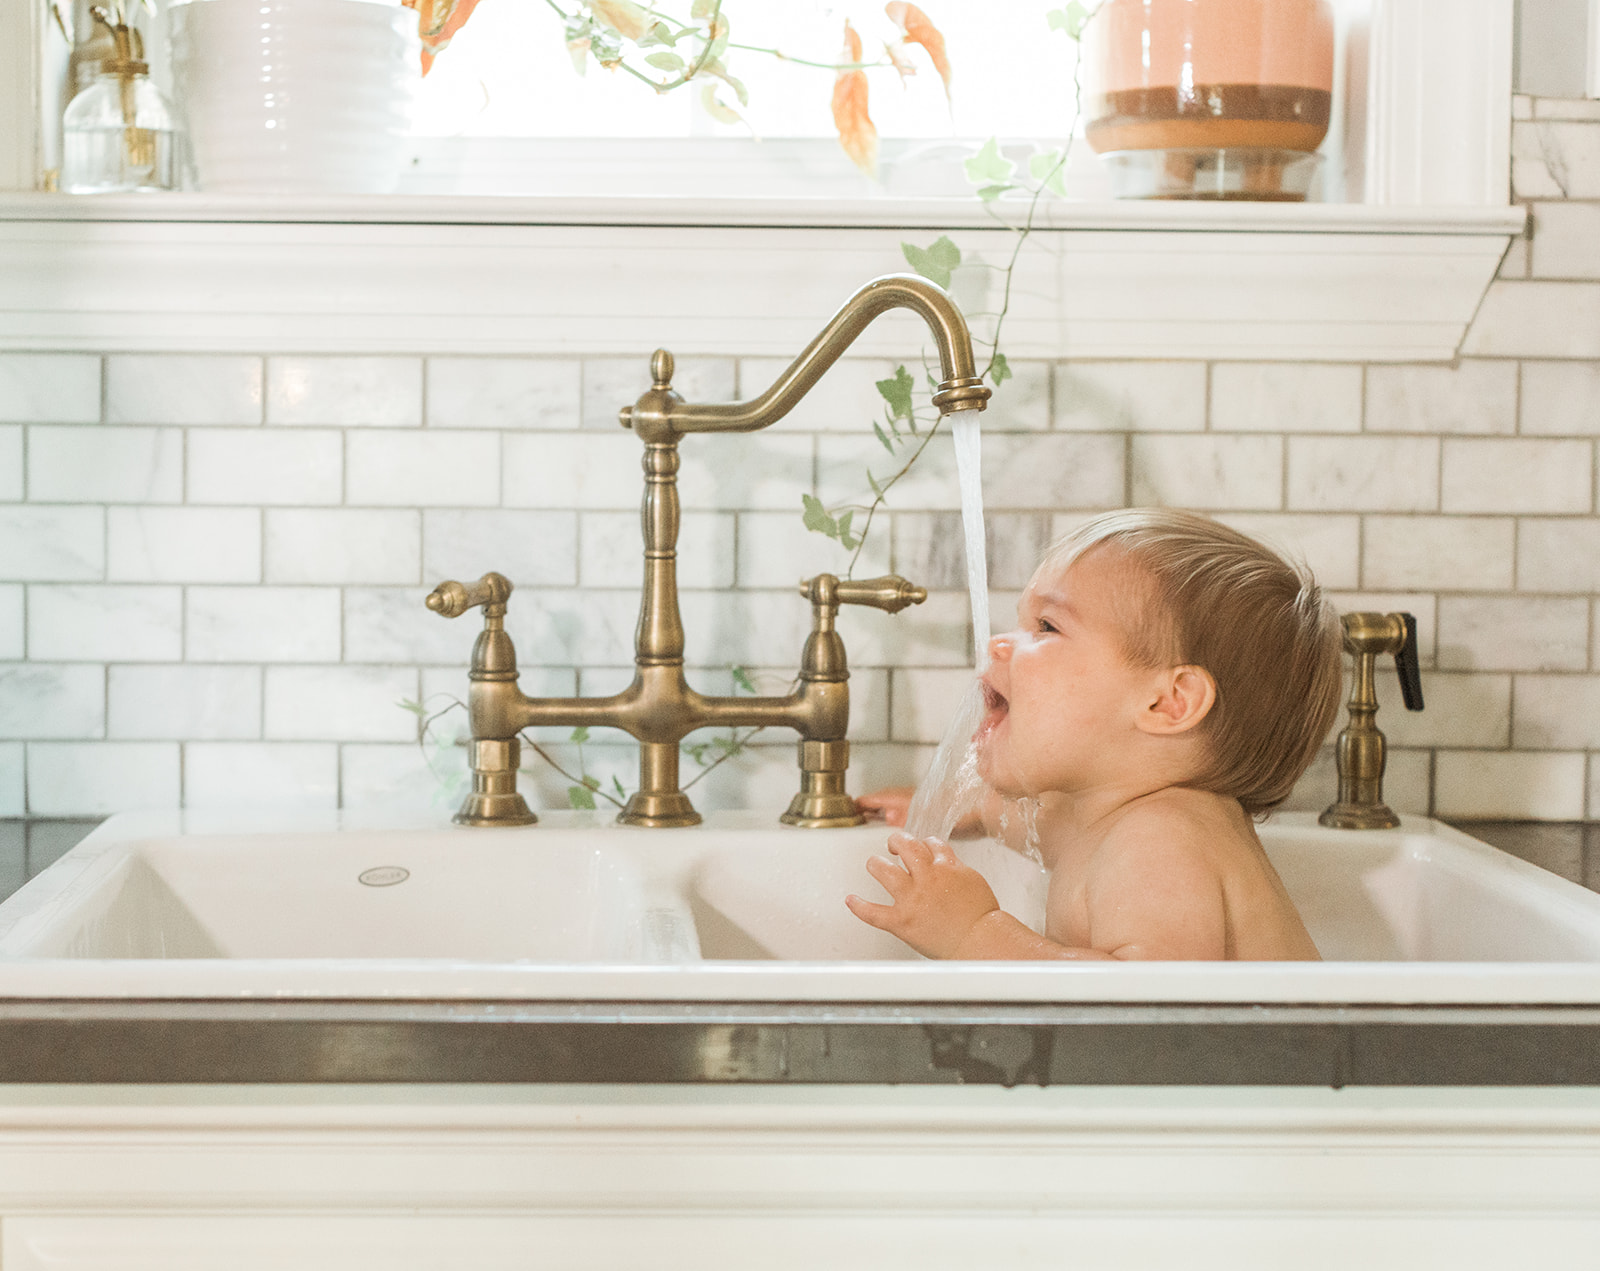 braden's 1st birthday photoshoot in nashville studio. baby taking a bath in kitchen sink